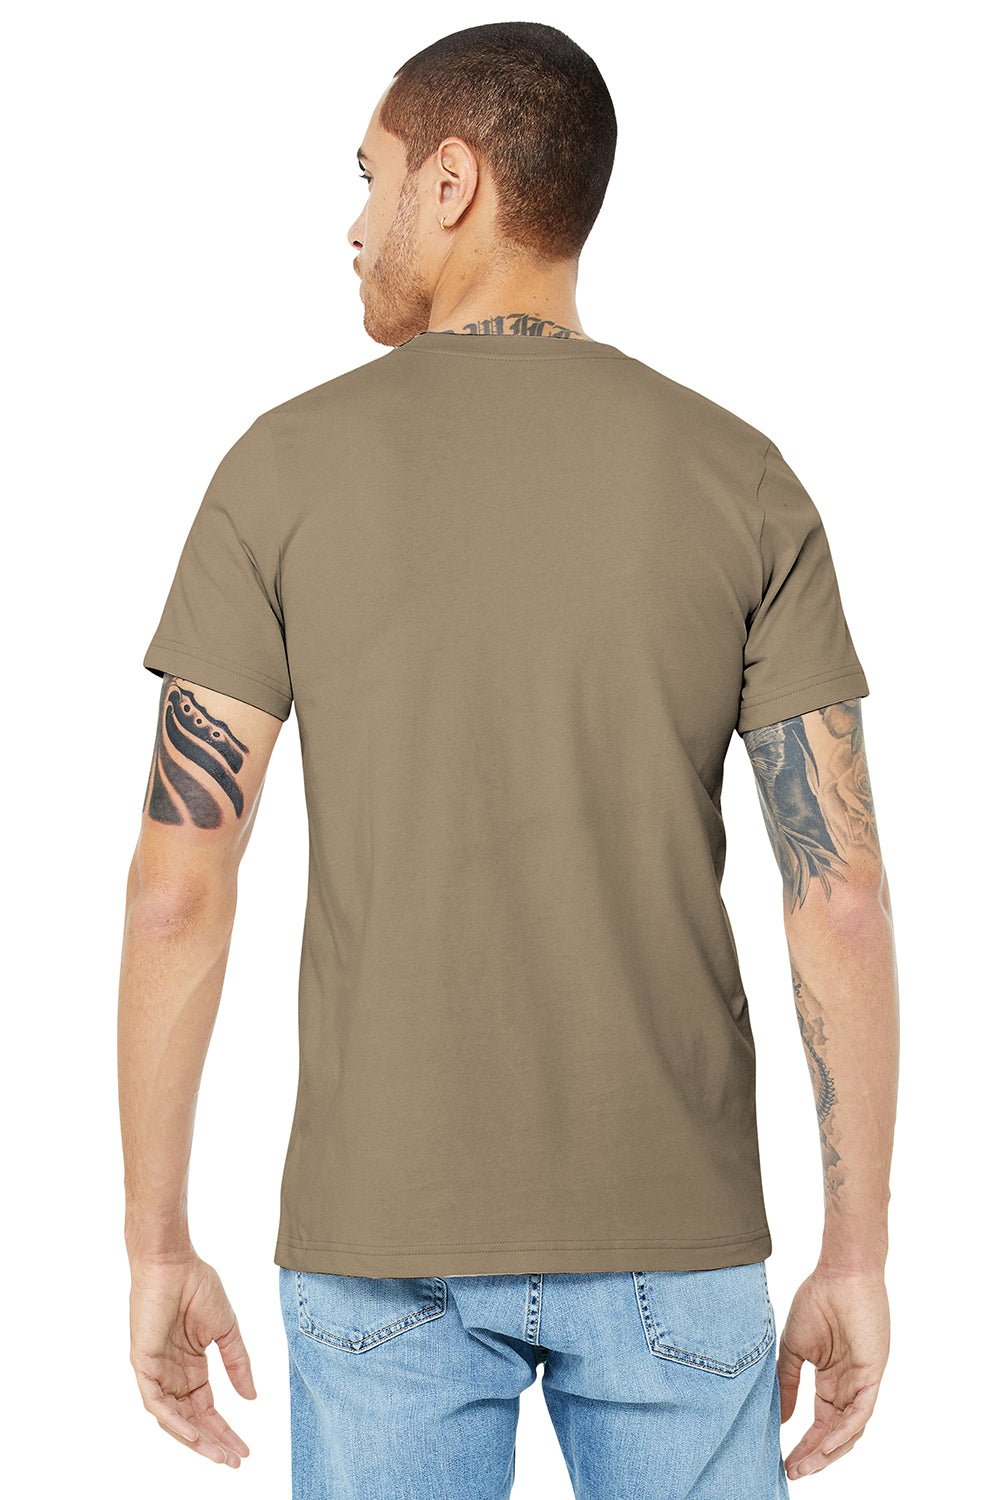 Bella + Canvas BC3001/3001C Mens Jersey Short Sleeve Crewneck T-Shirt Tan Model Back